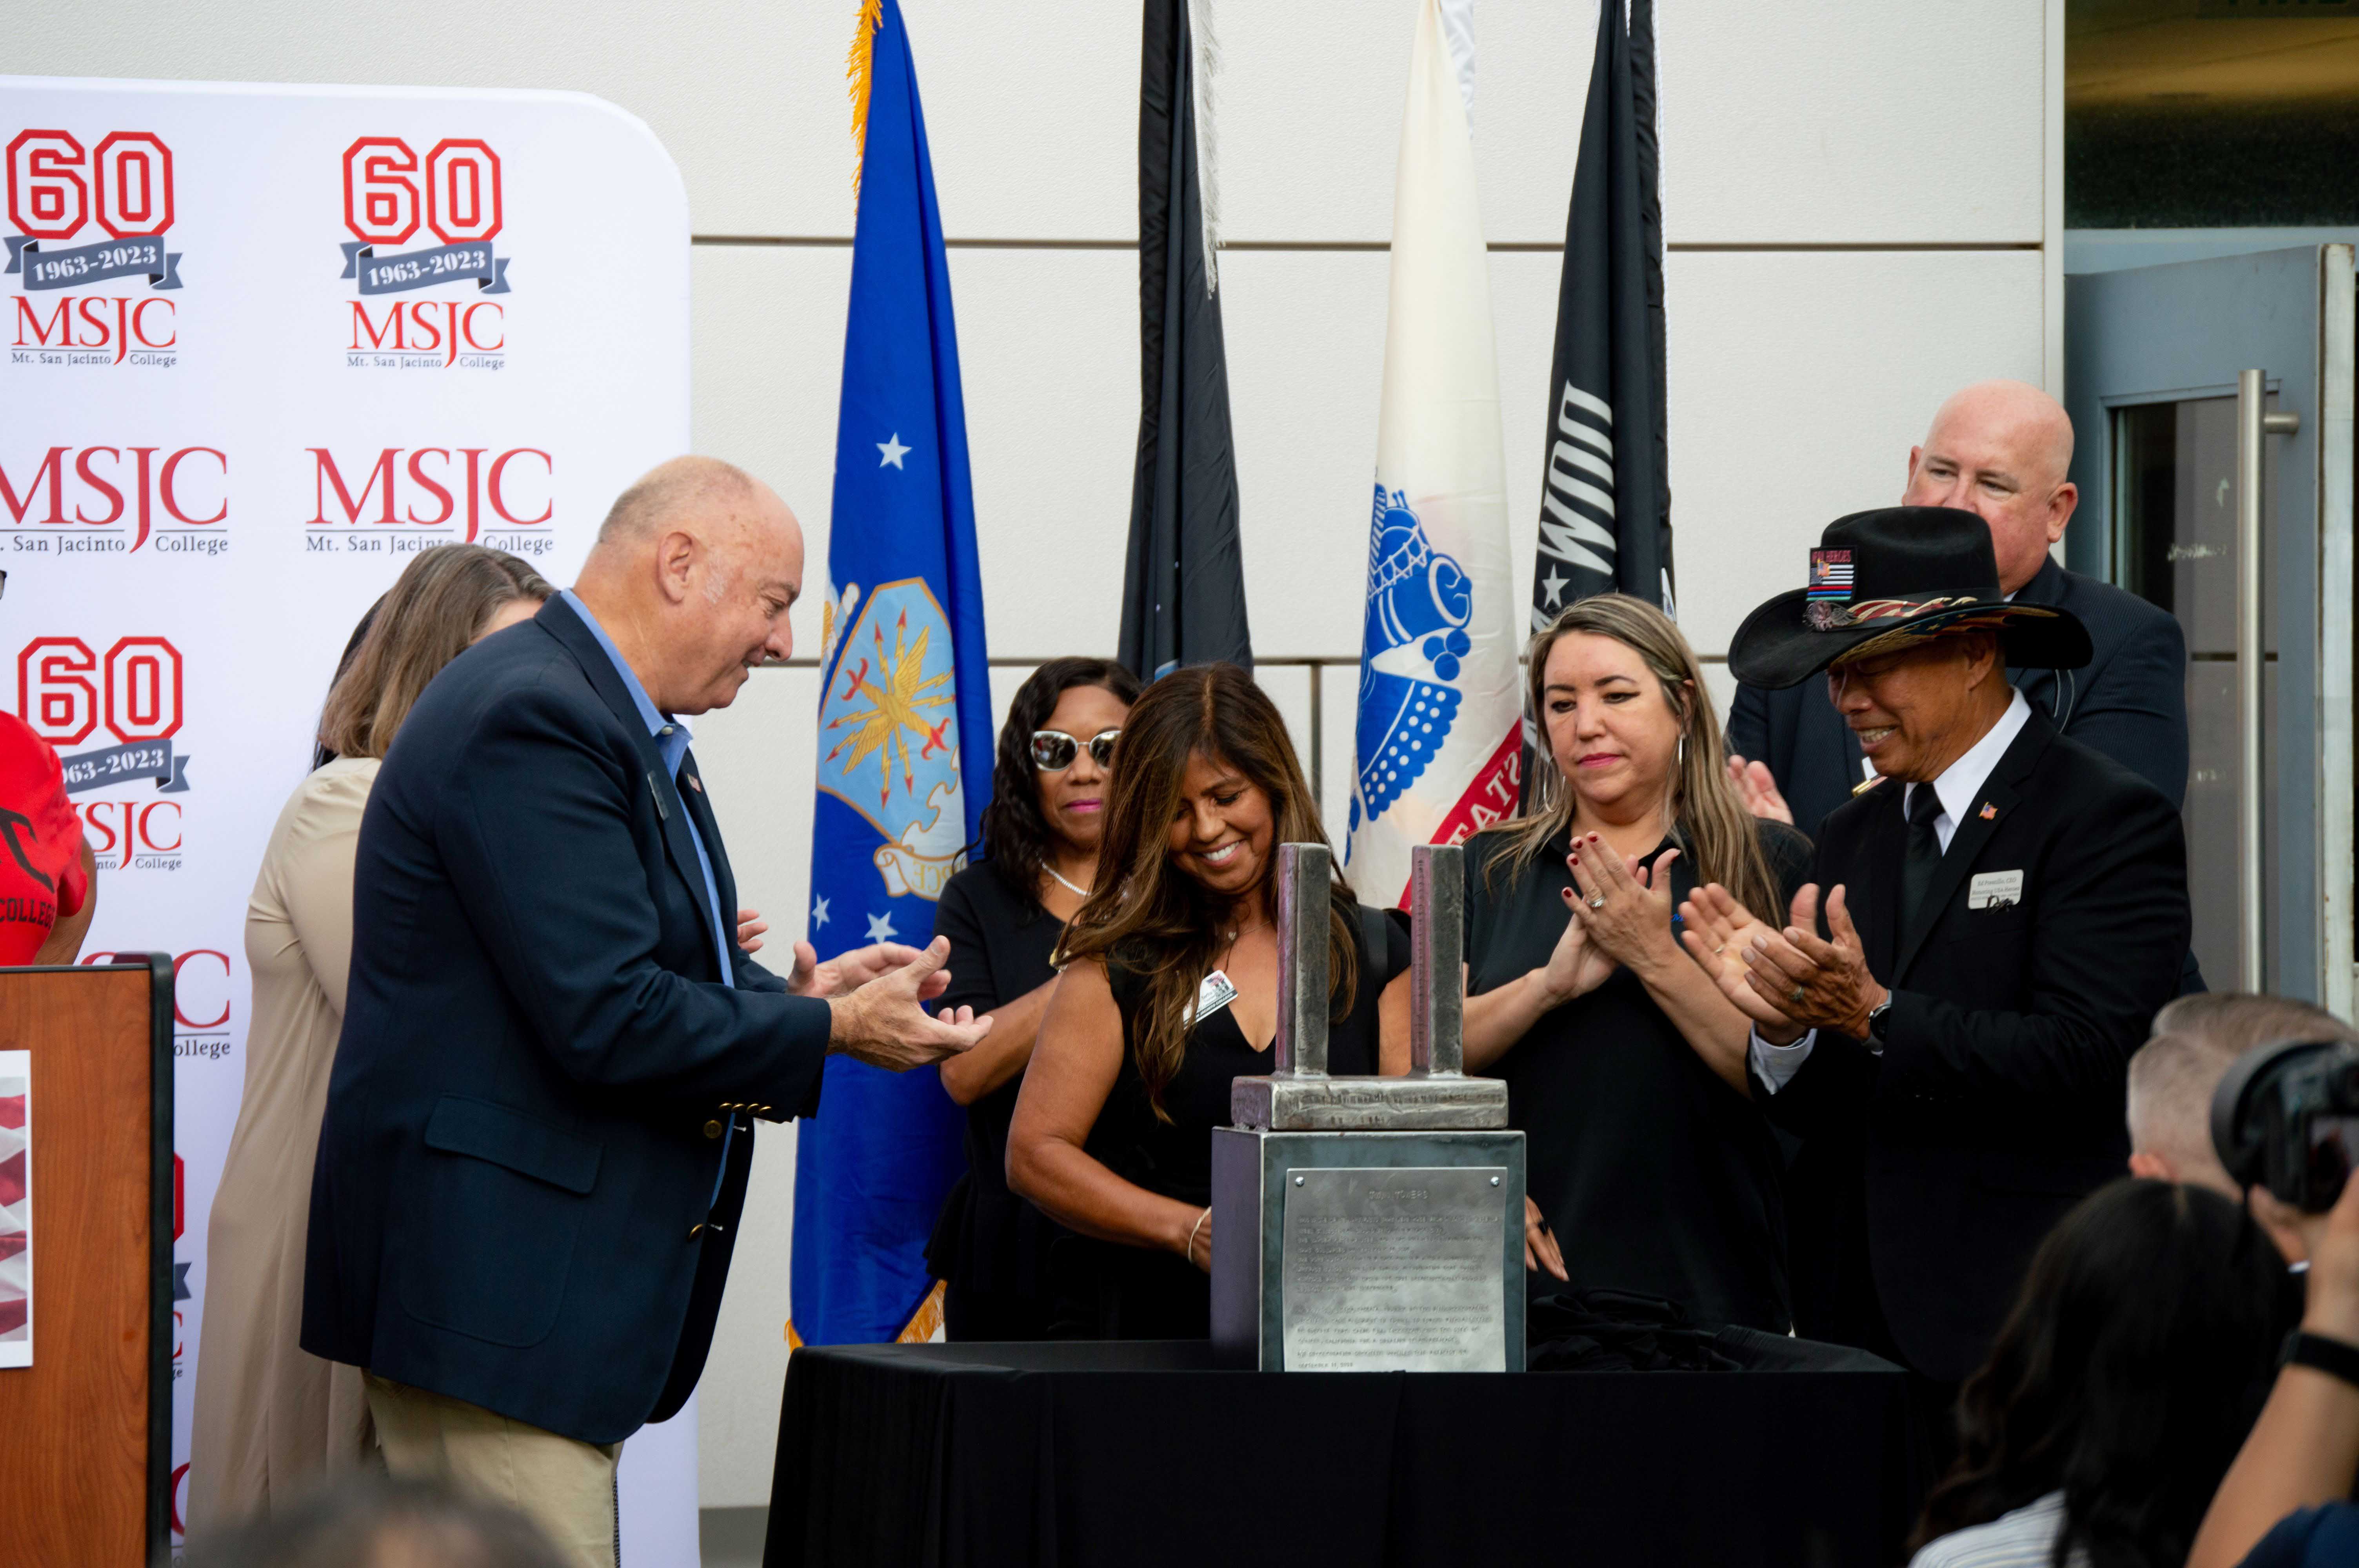 MSJC ceremony commemorates 9/11 Menifee 24/7